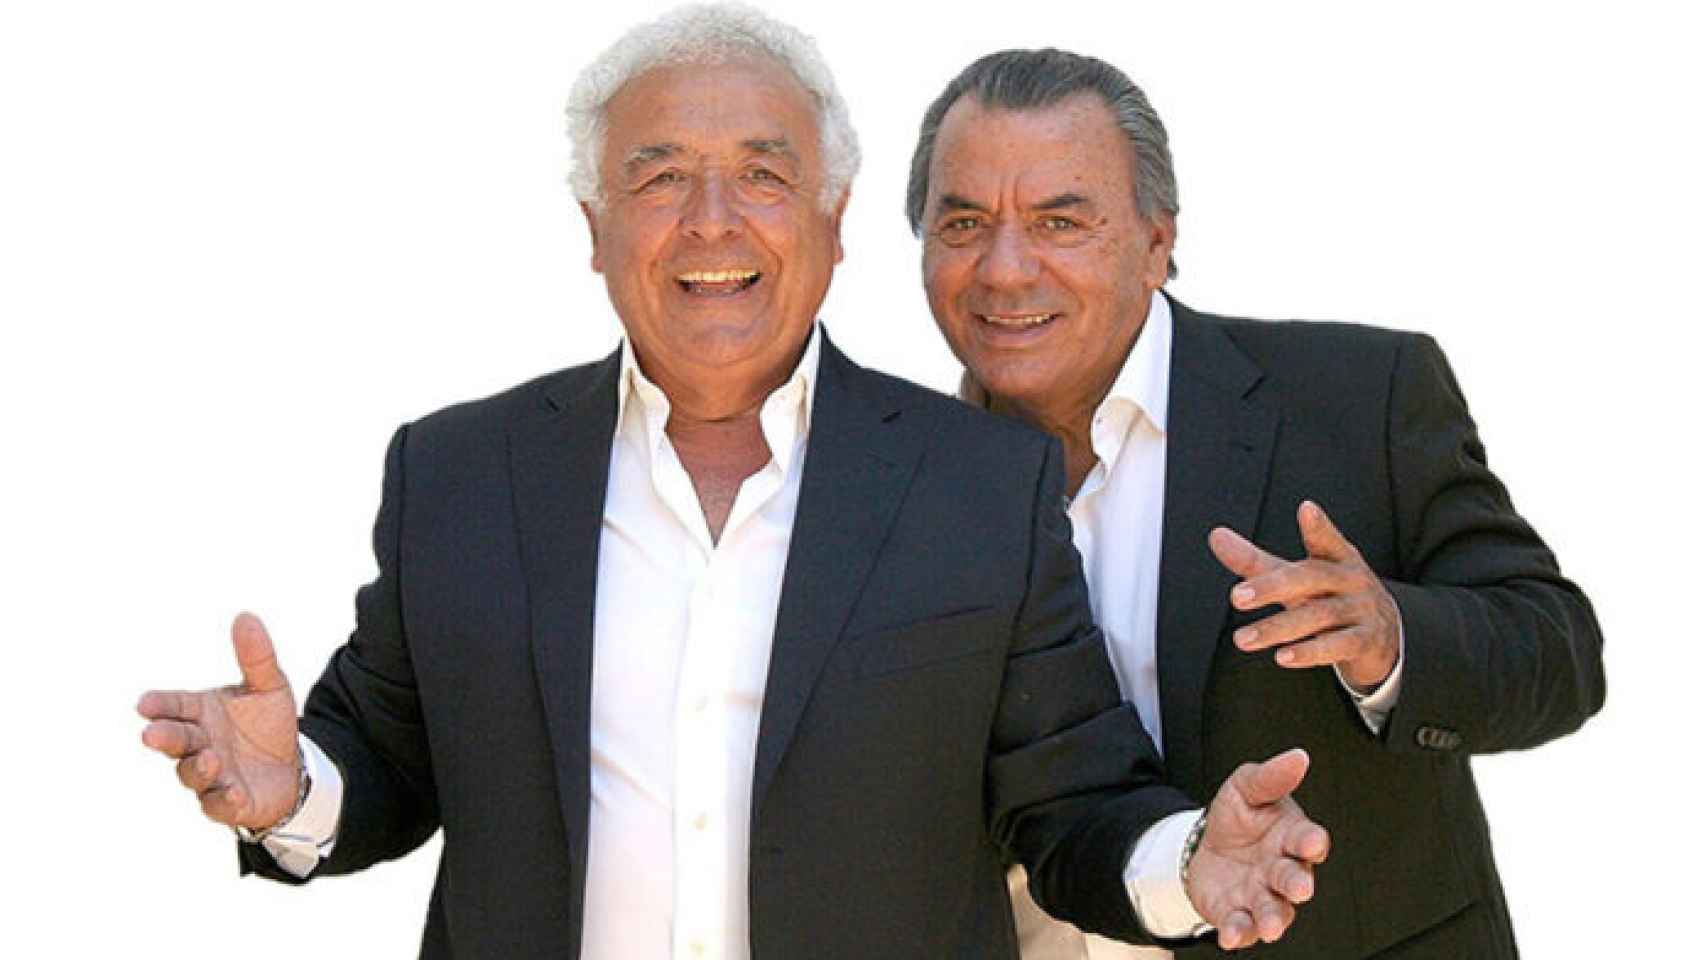 A la izquierda, Antonio Romero Monge y, a la derecha, Rafael Ruiz, los componente del dúo Los del Río.